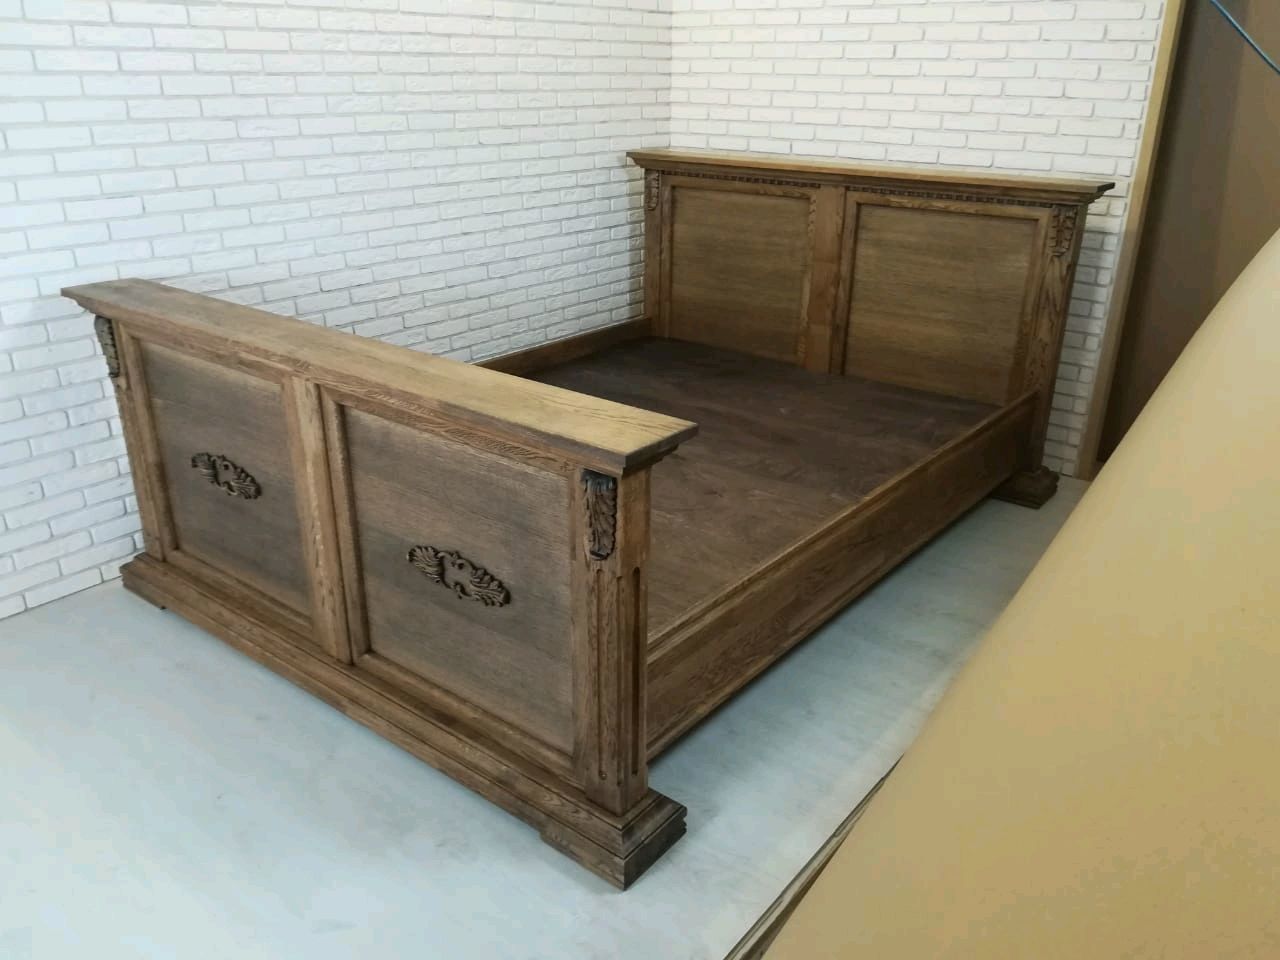 Кровать из массива дуба сара